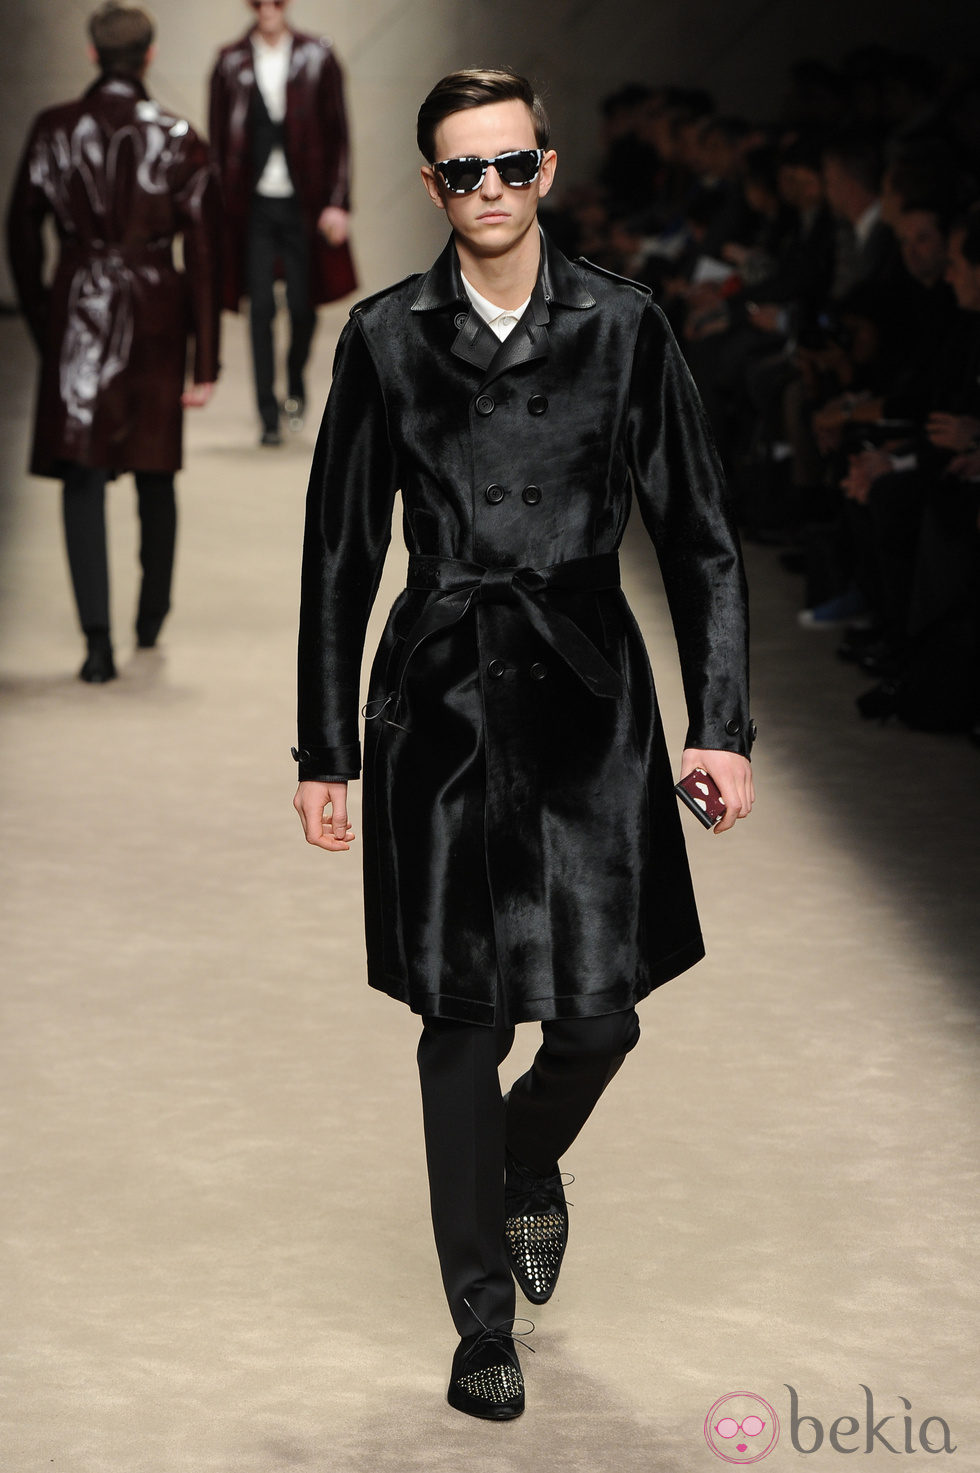 Trench negro brillante de Burberry en la Semana de la Moda Masculina de Milán otoño/invierno 2013/2014